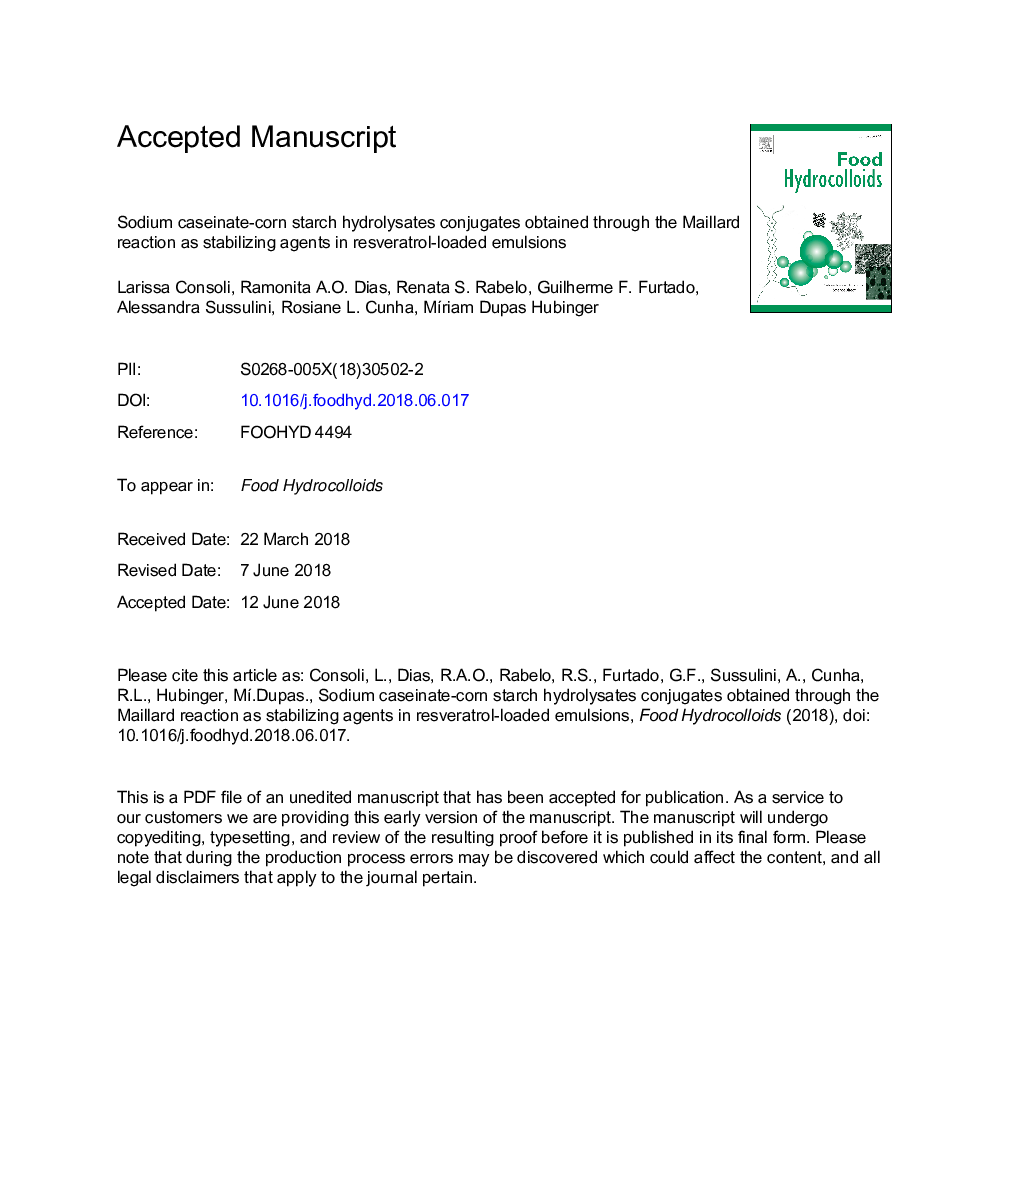 سدیم نشاسته کازئین ذرت هیدرولیز کنسانتره های حاصل از واکنش مایار را به عنوان عوامل تثبیت کننده در امولسیون های بارگیری شده با رزوراترول 